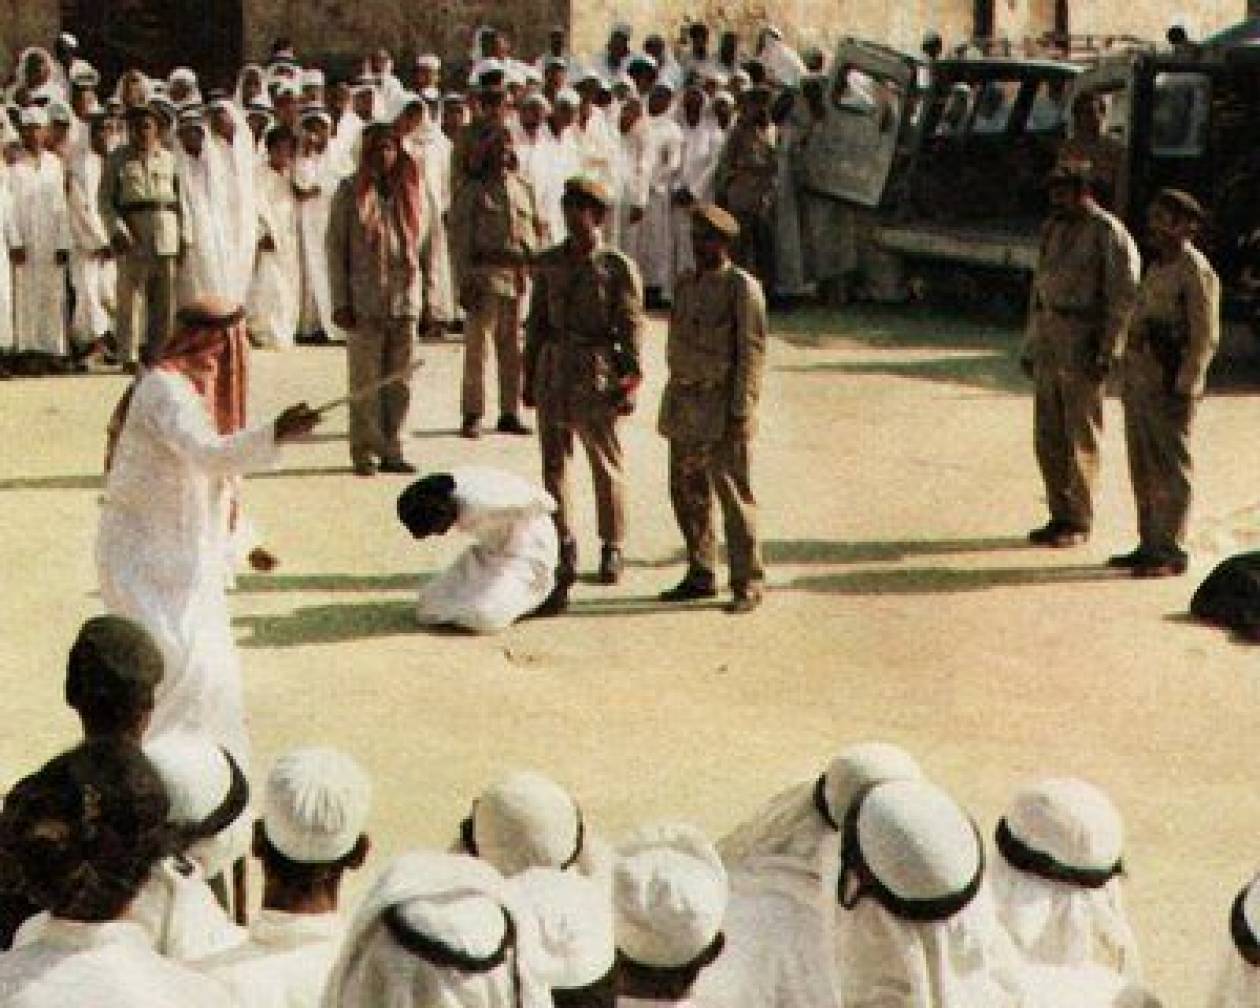 Σ. Αραβία: Εκτέλεση με αποκεφαλισμό για δύο άνδρες